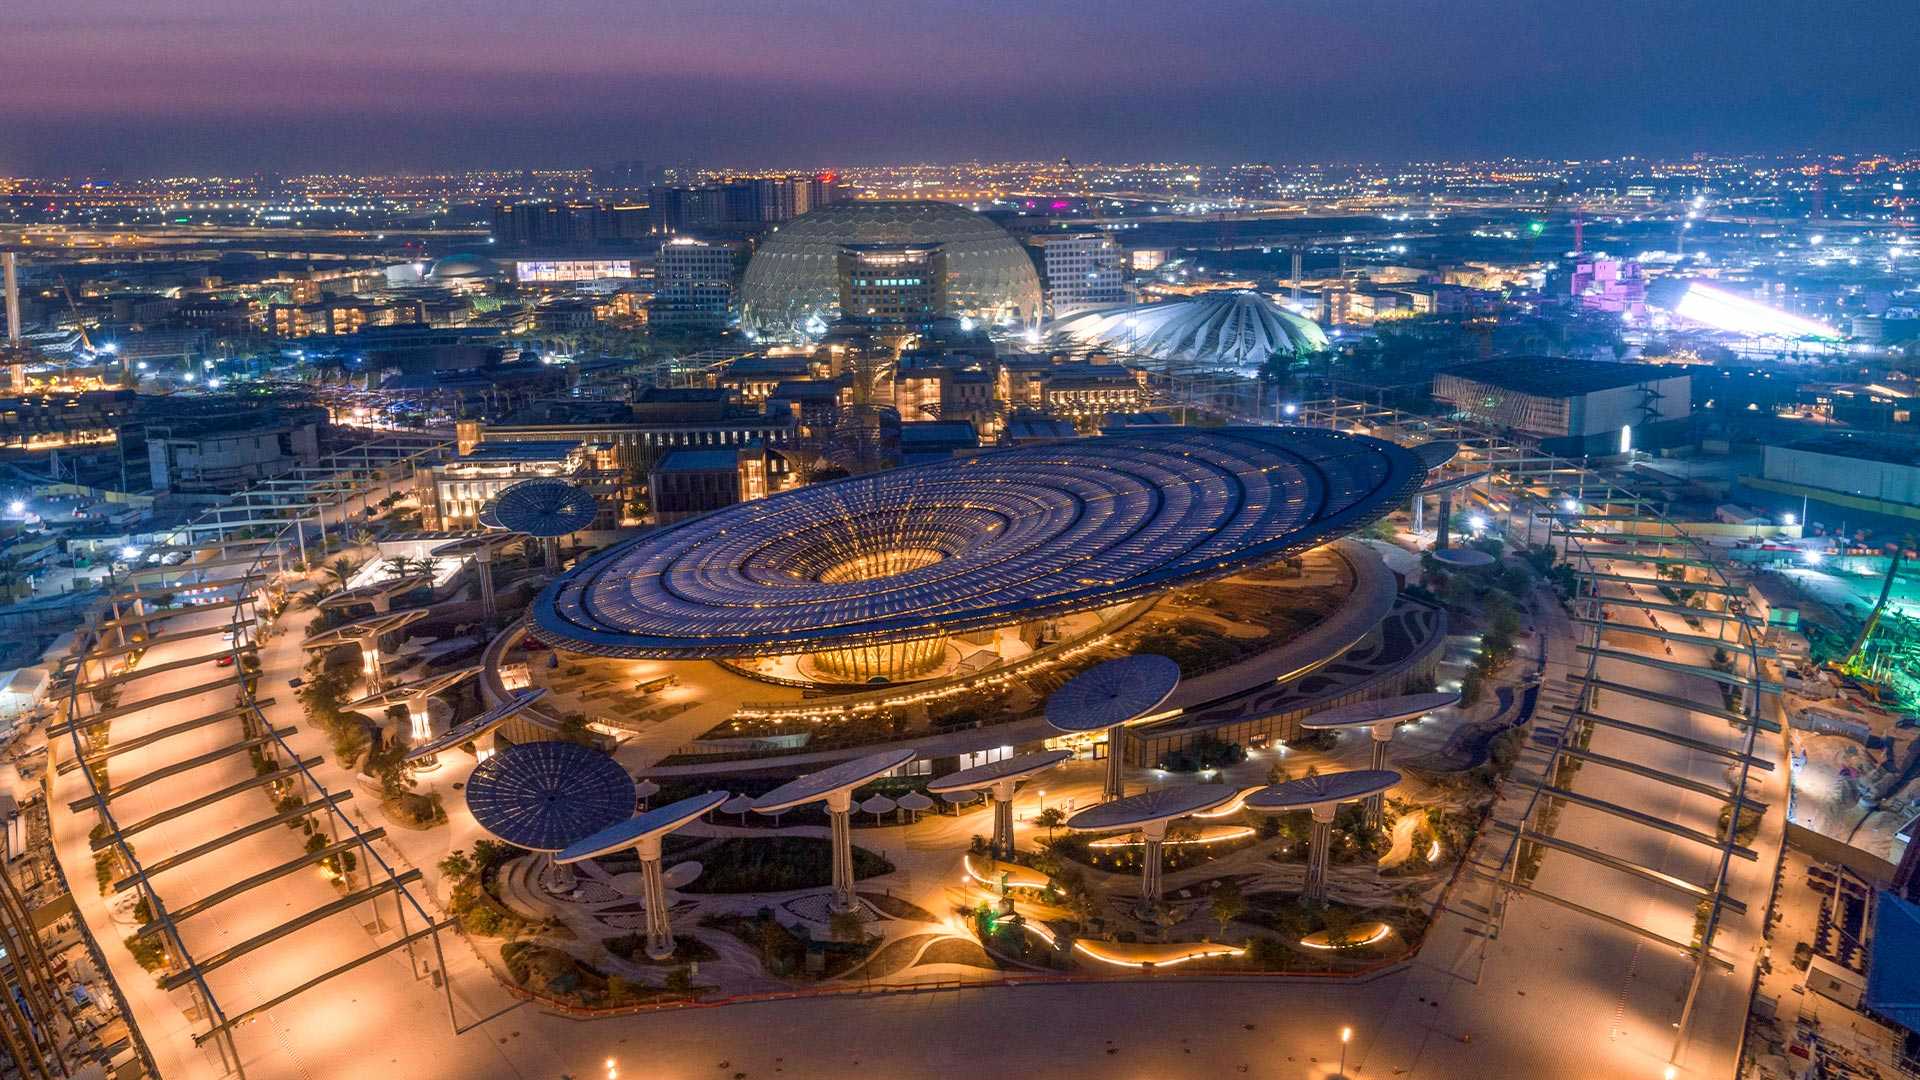 You are currently viewing Retrouvez-nous à l’Expo Dubaï 2020 du 1 octobre 2021 au 31 mars 2022 sur le stand ….